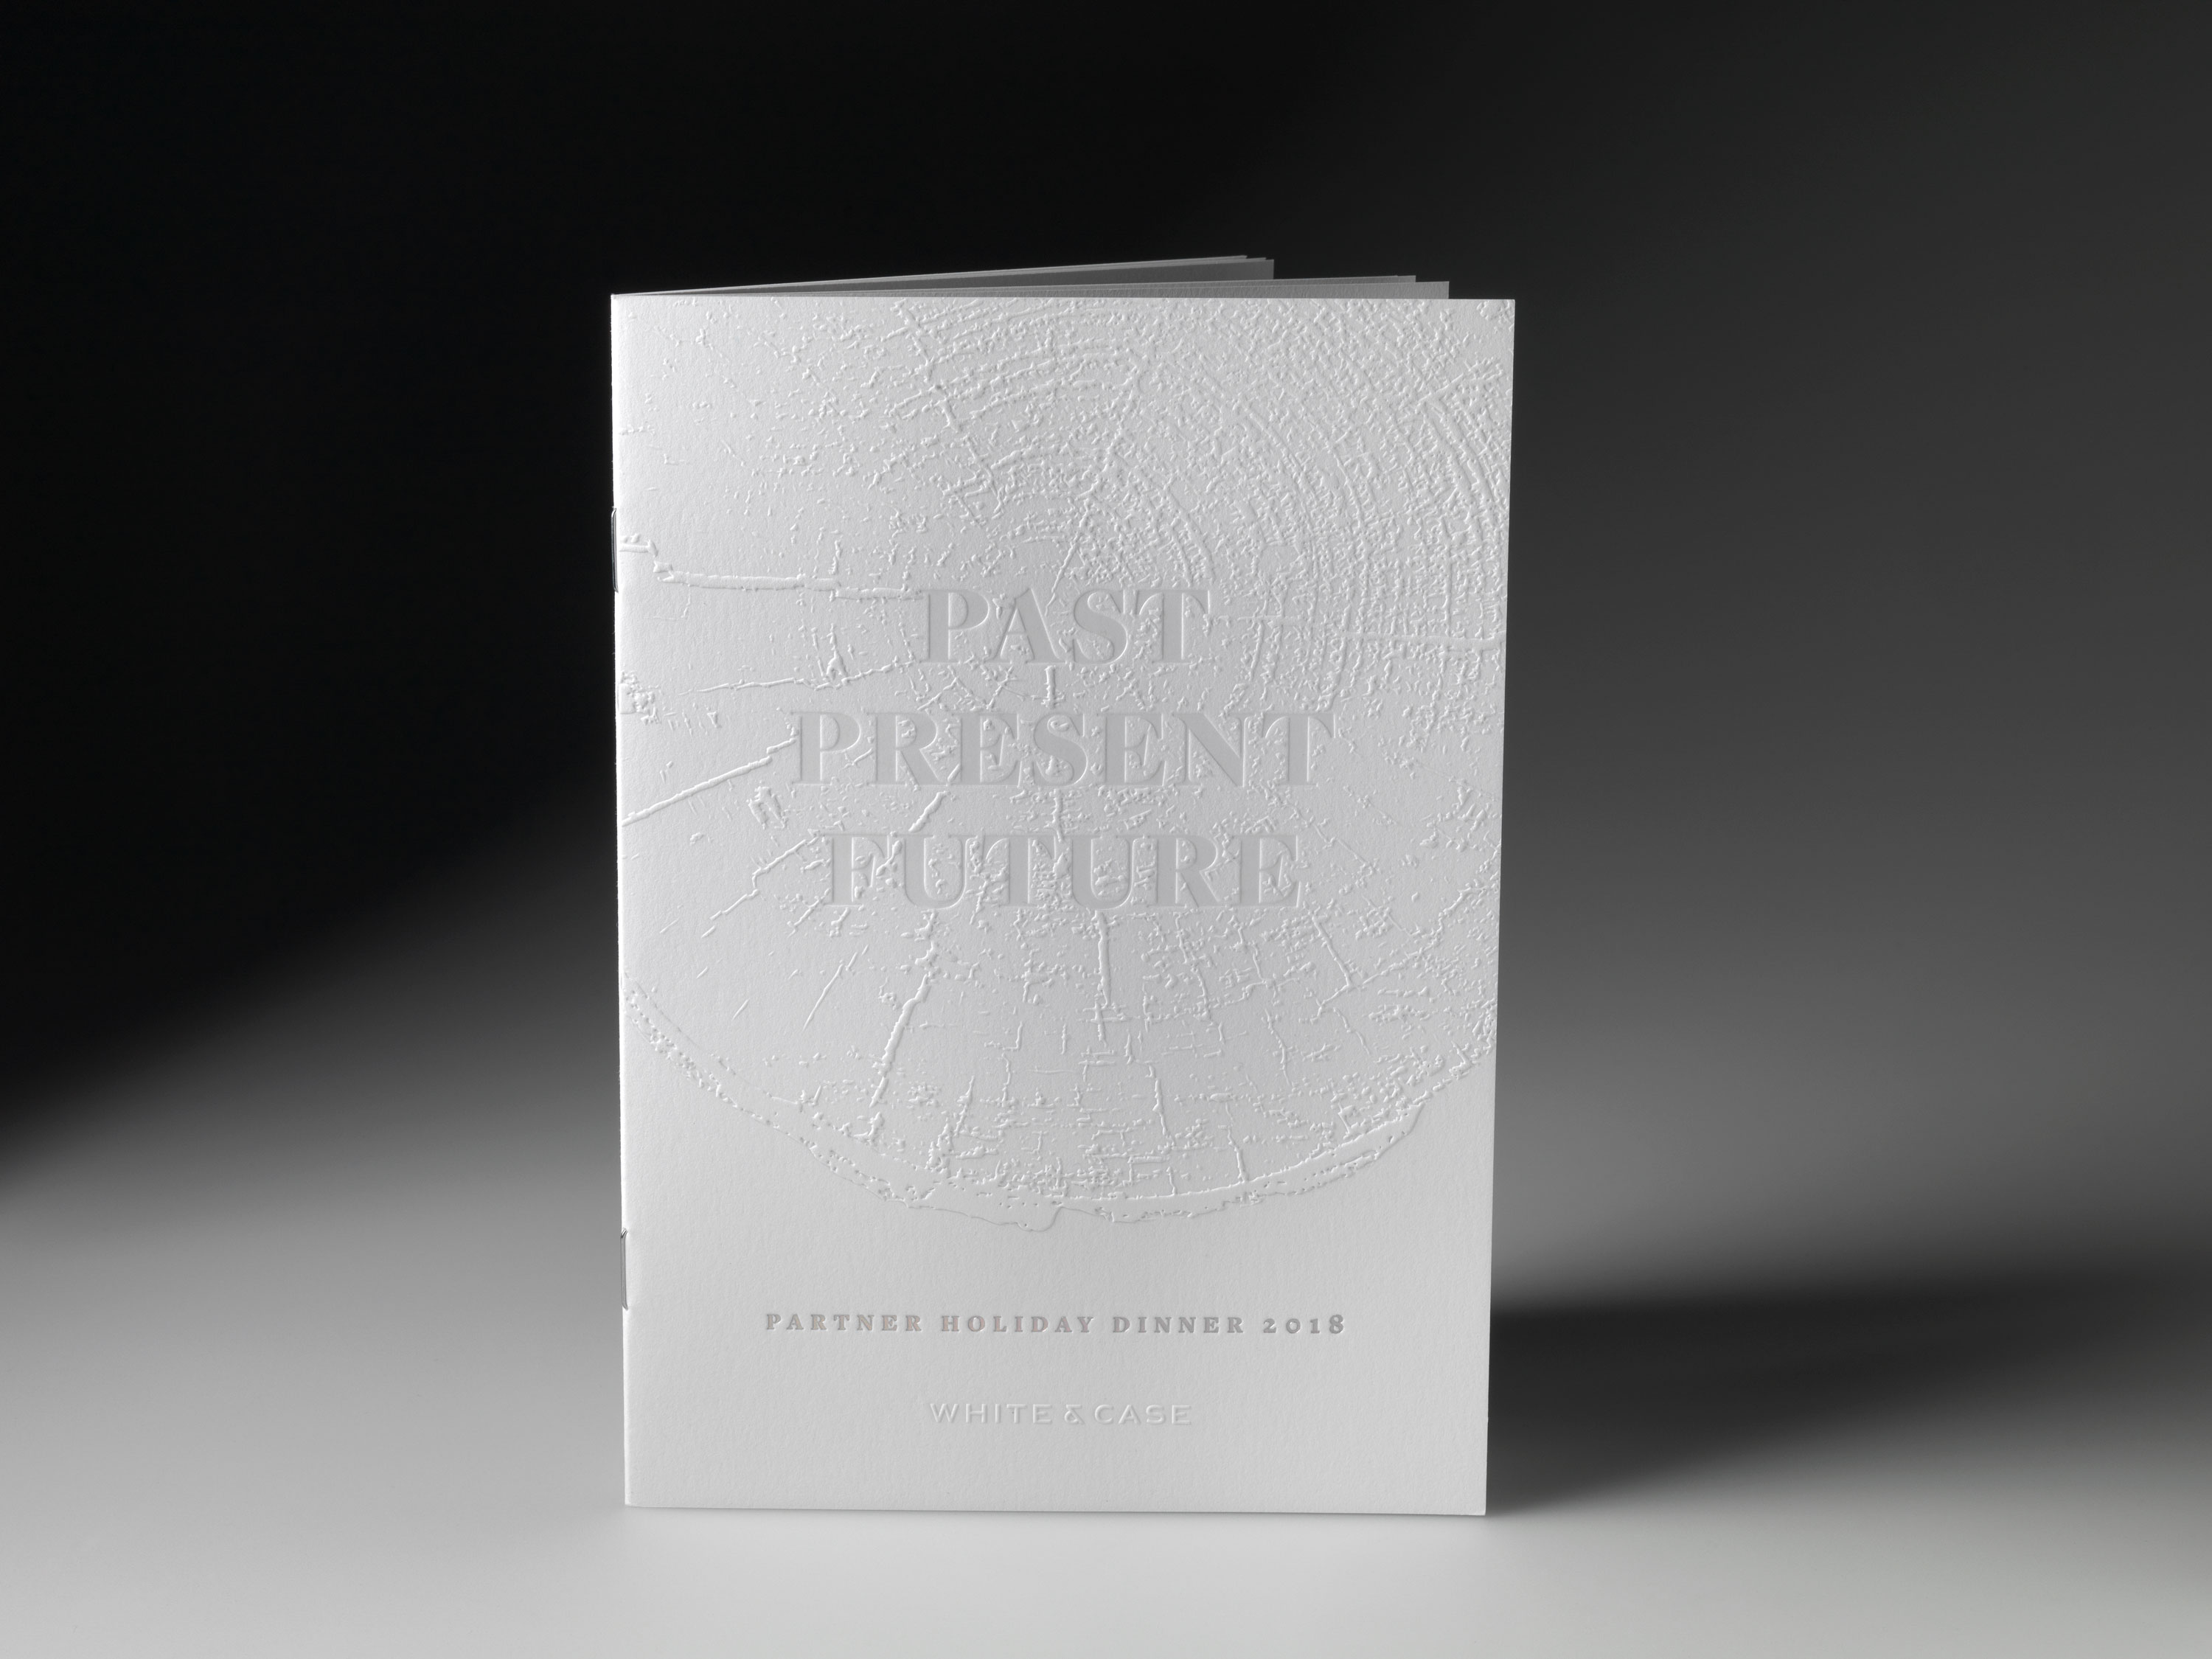 White & Case’s Past, Present and Future